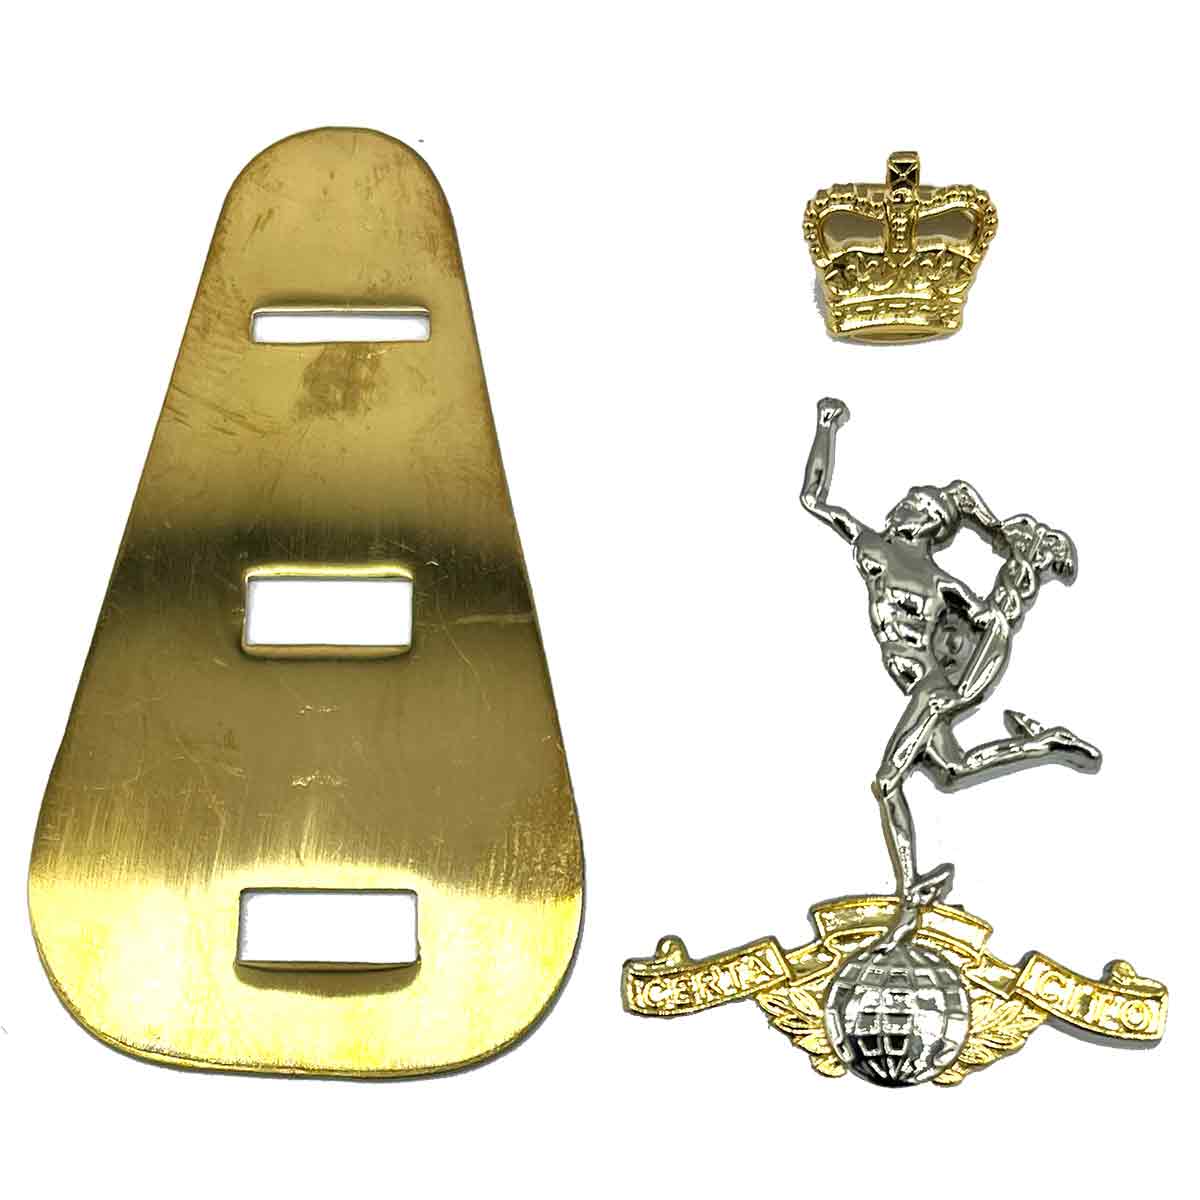 Royal Signals Beret Cap Badge - John Bull Clothing